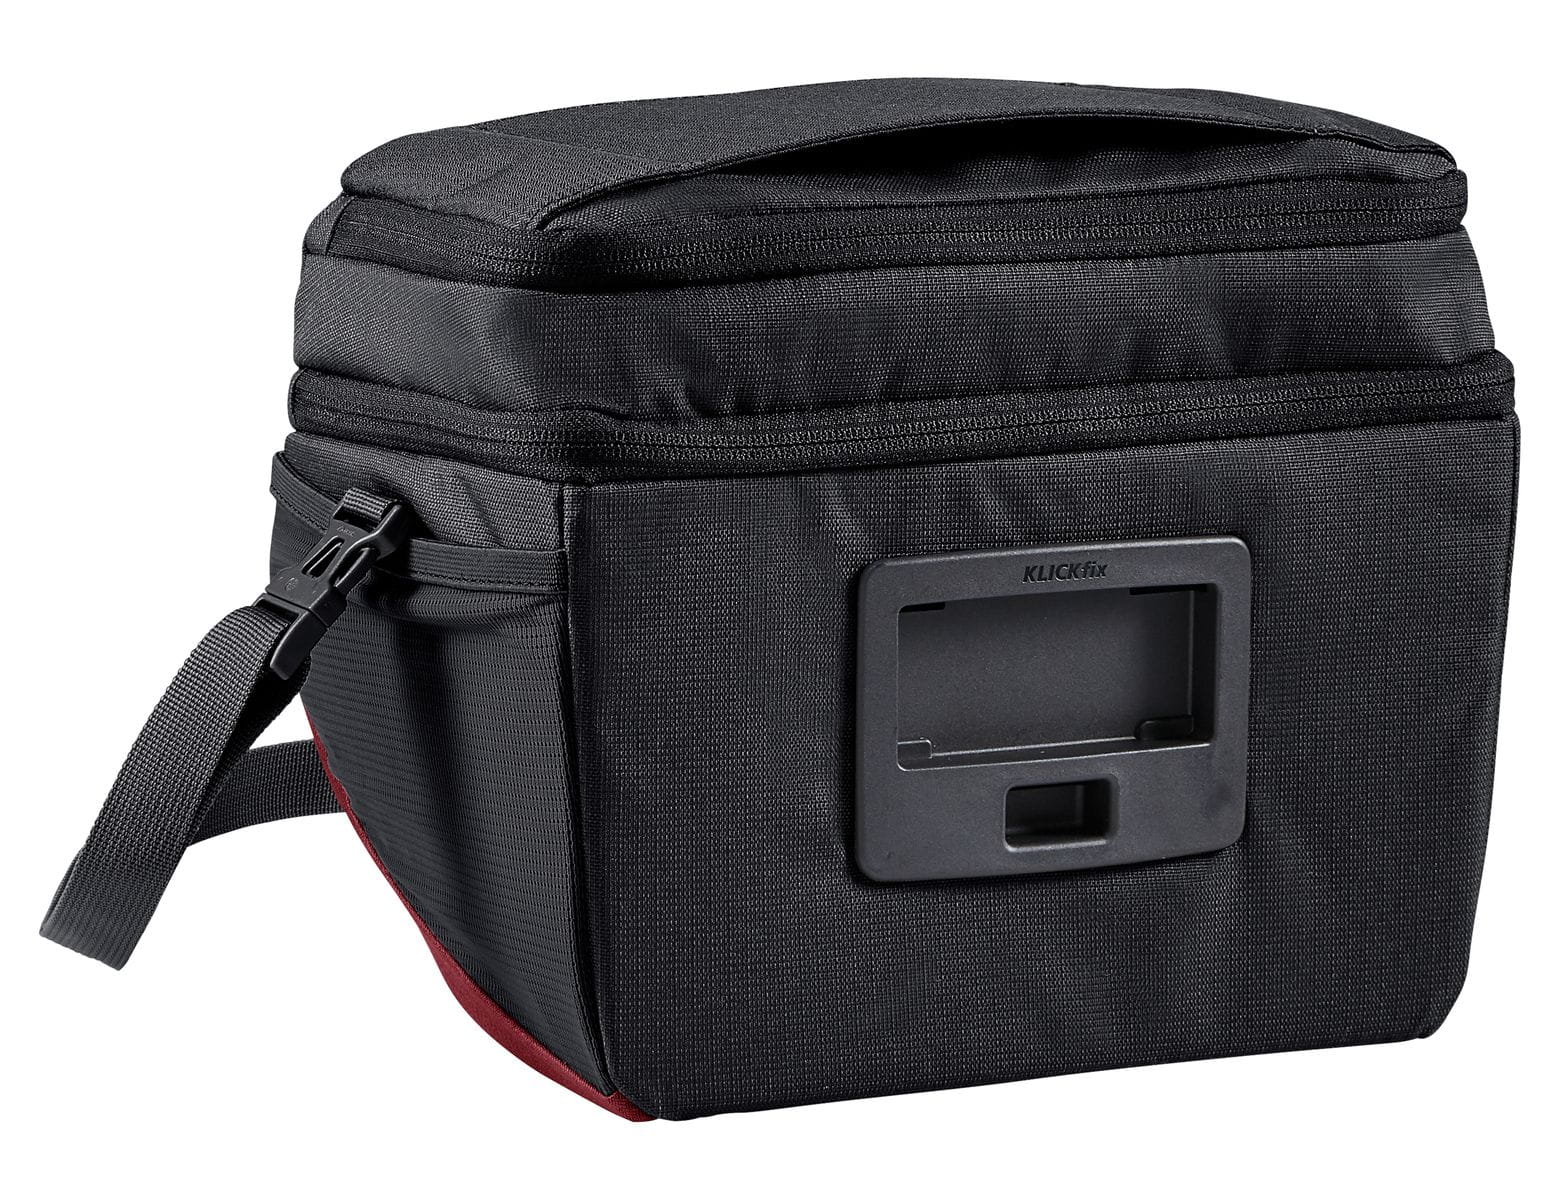 VAUDE OnTour Box L Handlebar Bag 6L Klickfix compatible